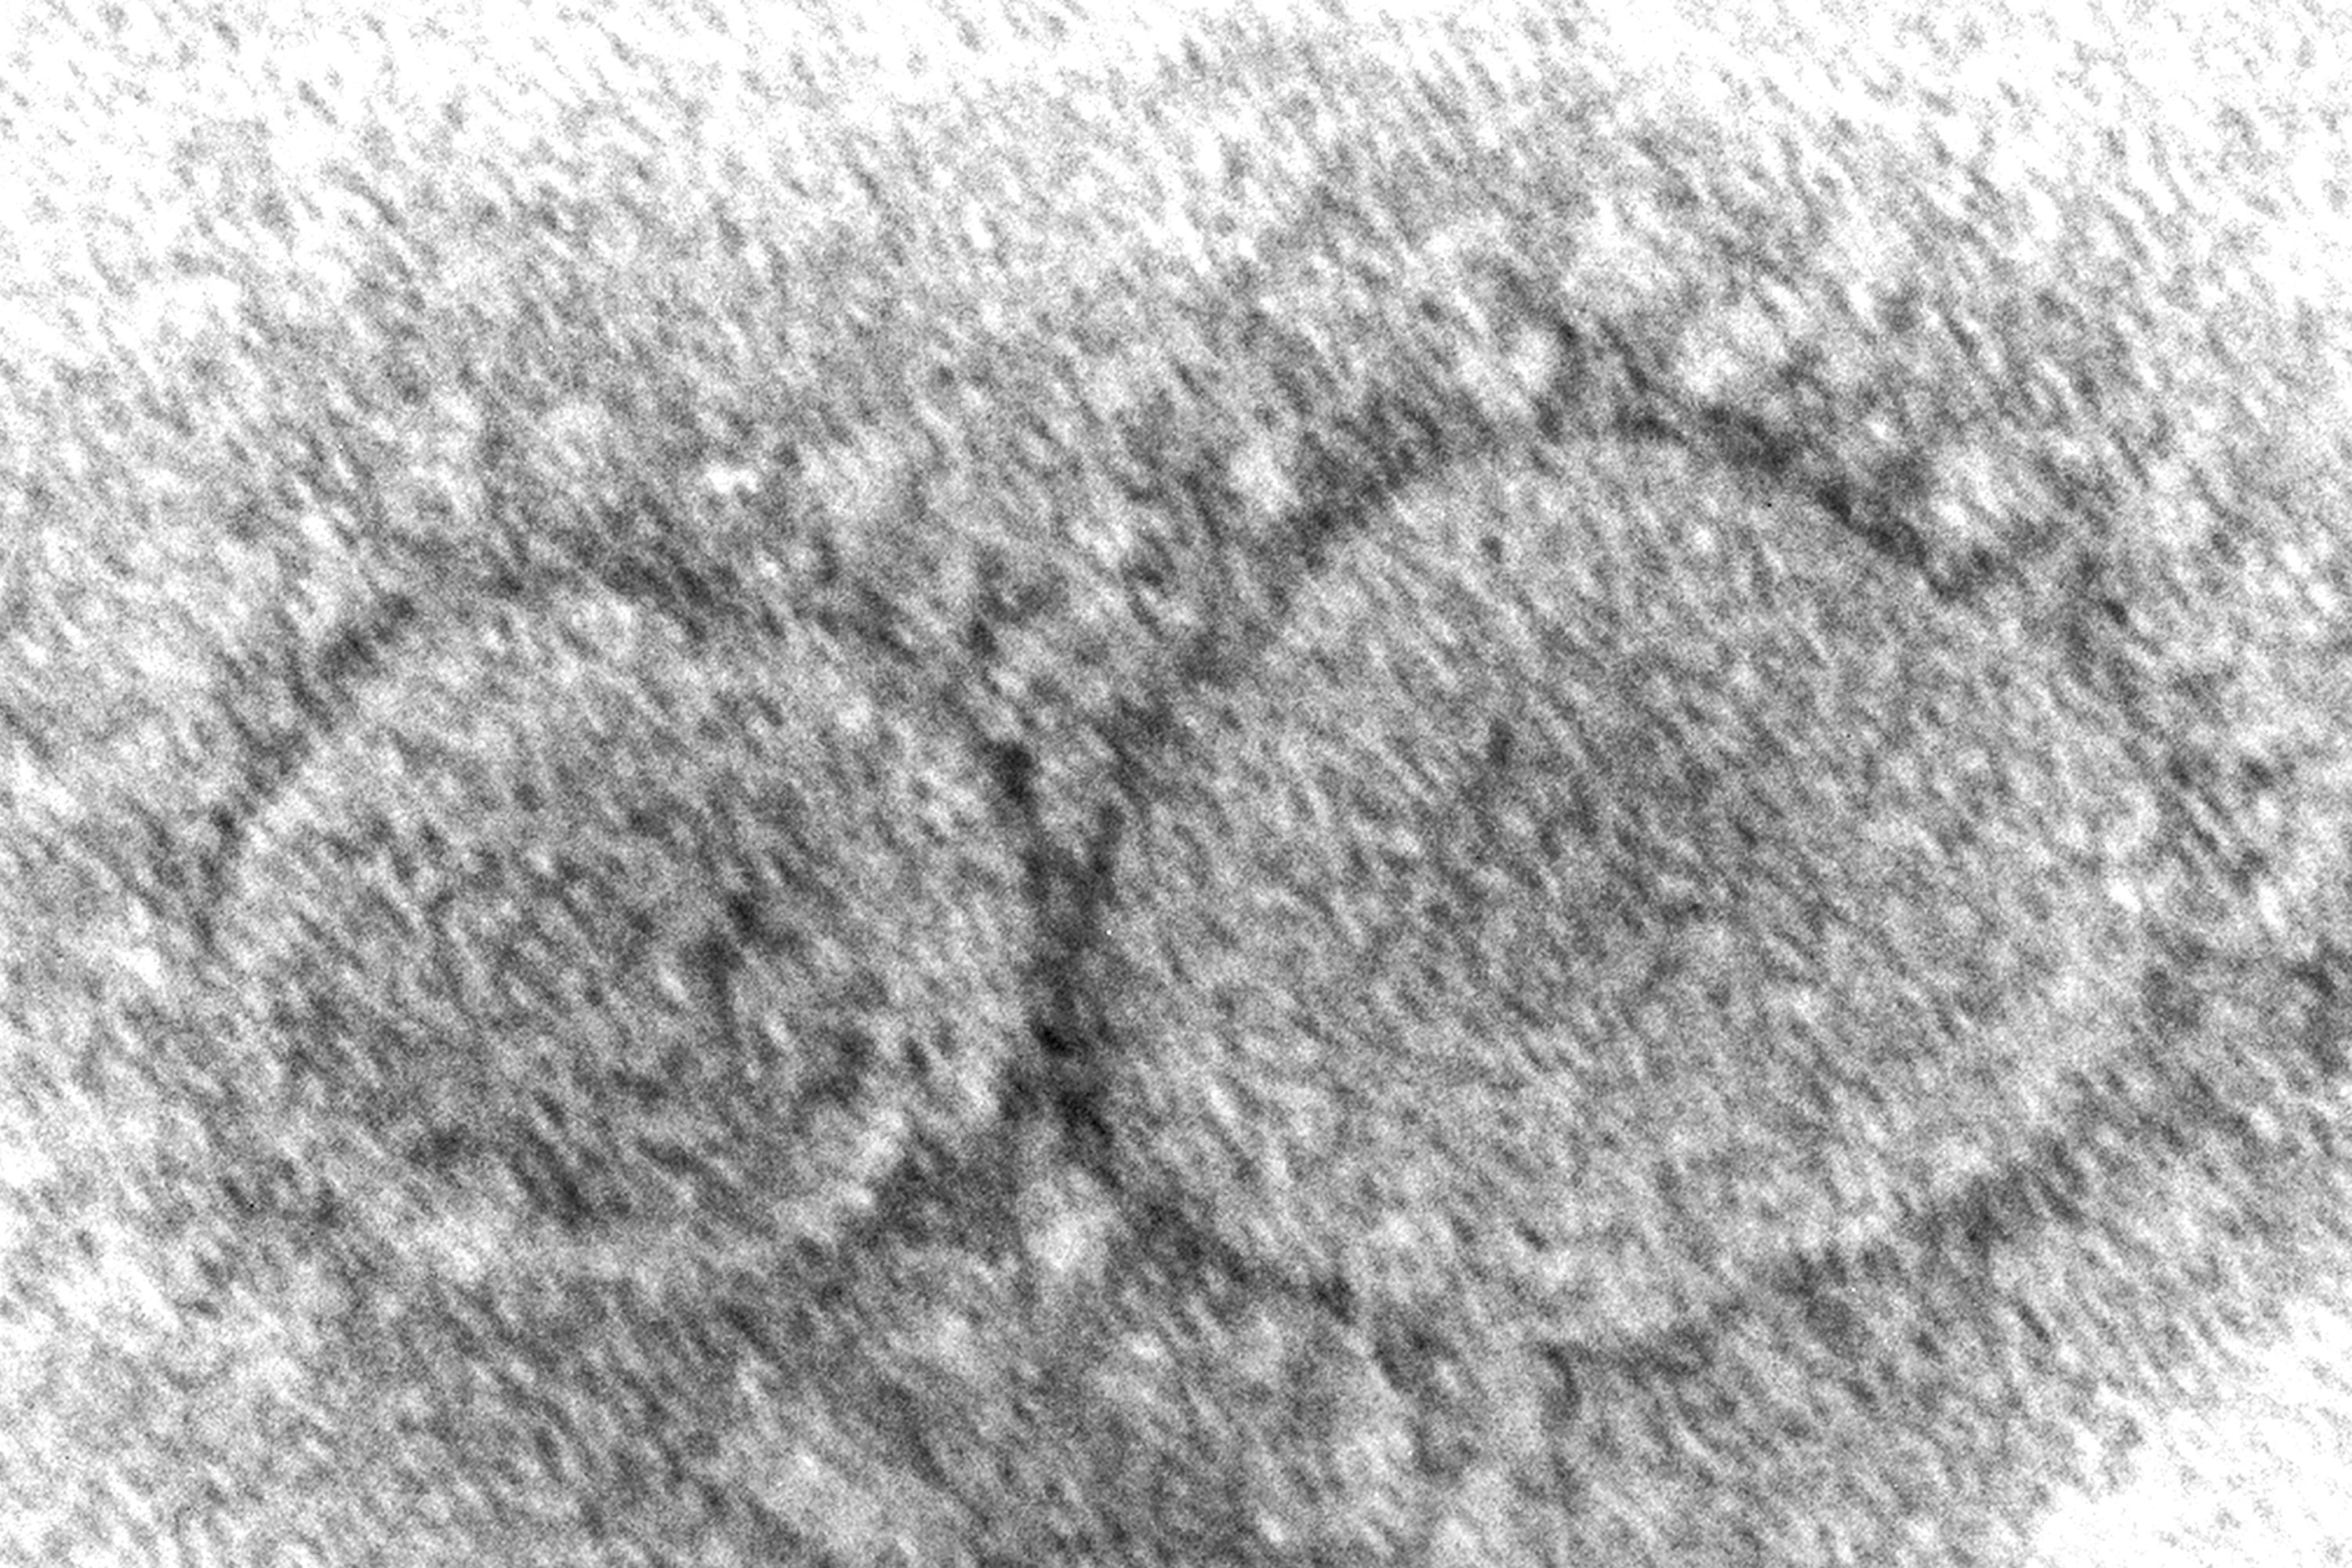 Virus Outbreak Variants Reinfection